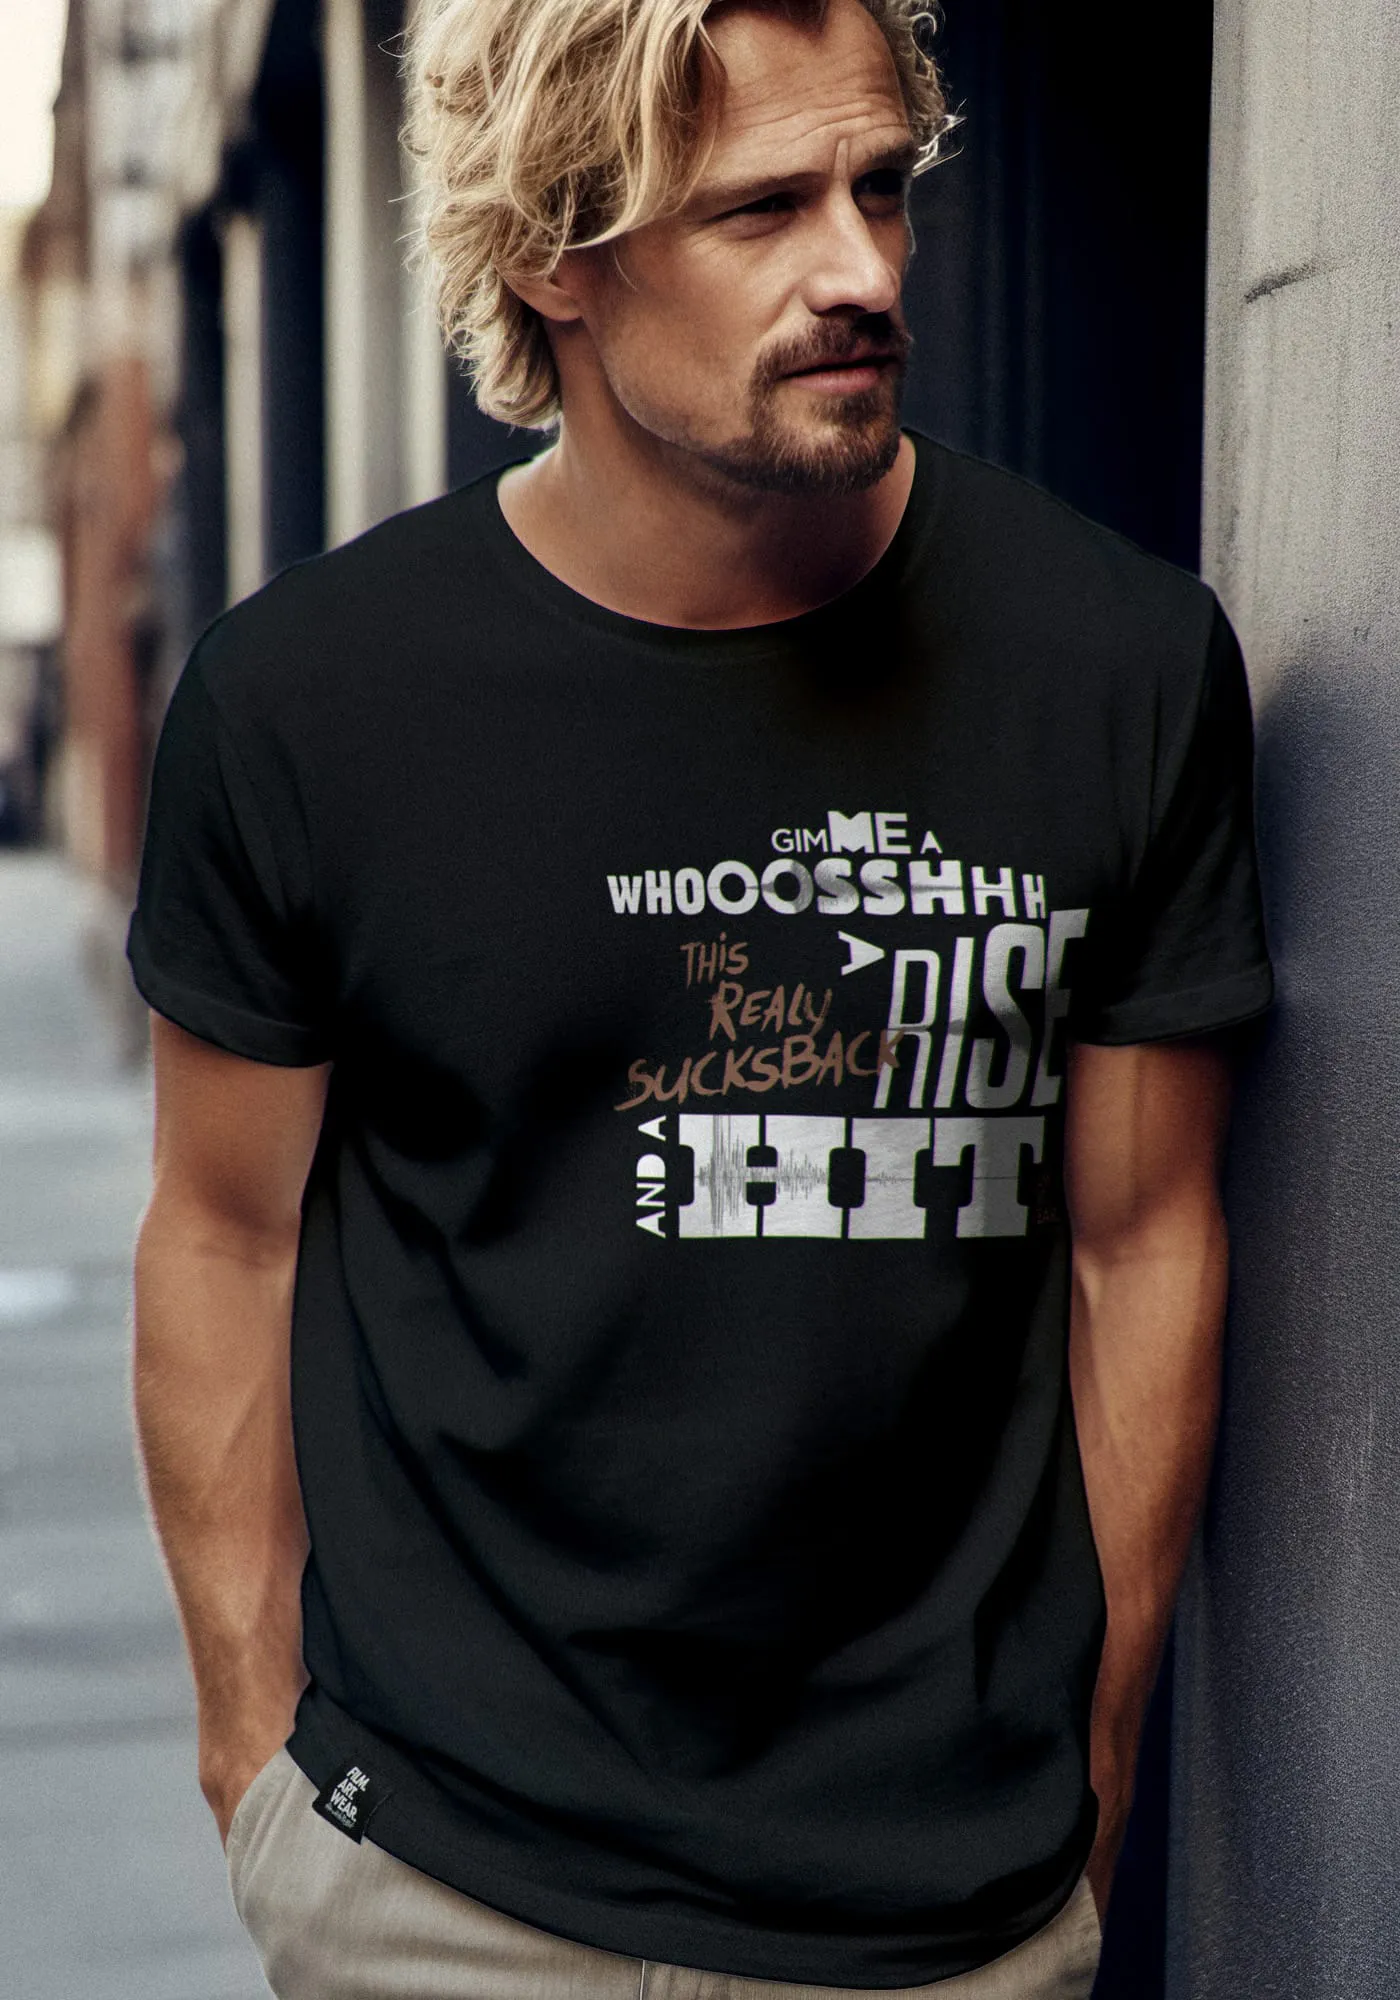 Nerd-shirts film t-shirt Gimme getragen von model Greg in lässiger Pose